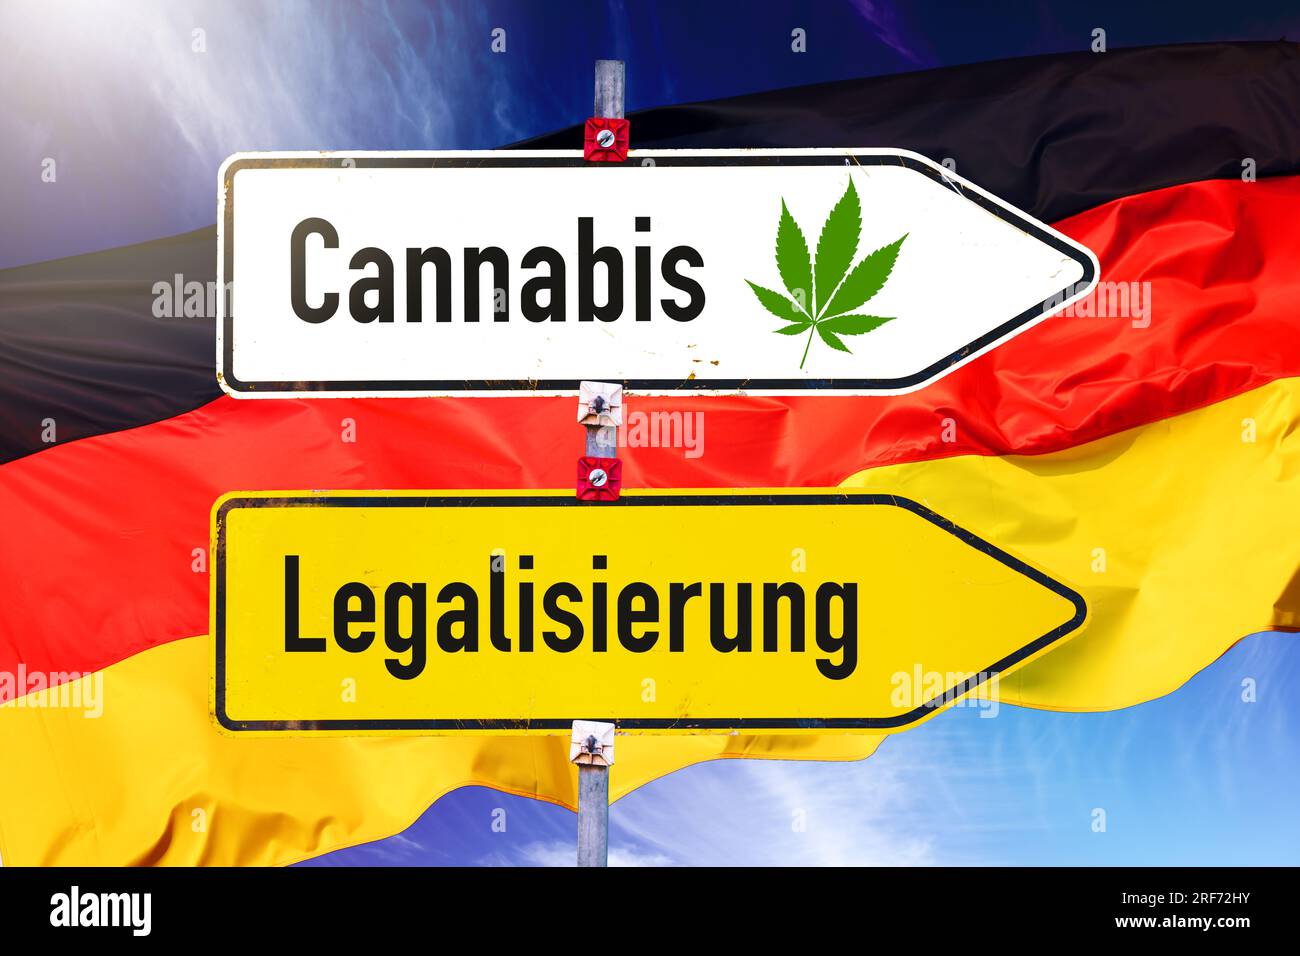 Fotomontage, Wegweiser Cannabis und Legalisierung mit Deutschlandfahne Foto Stock